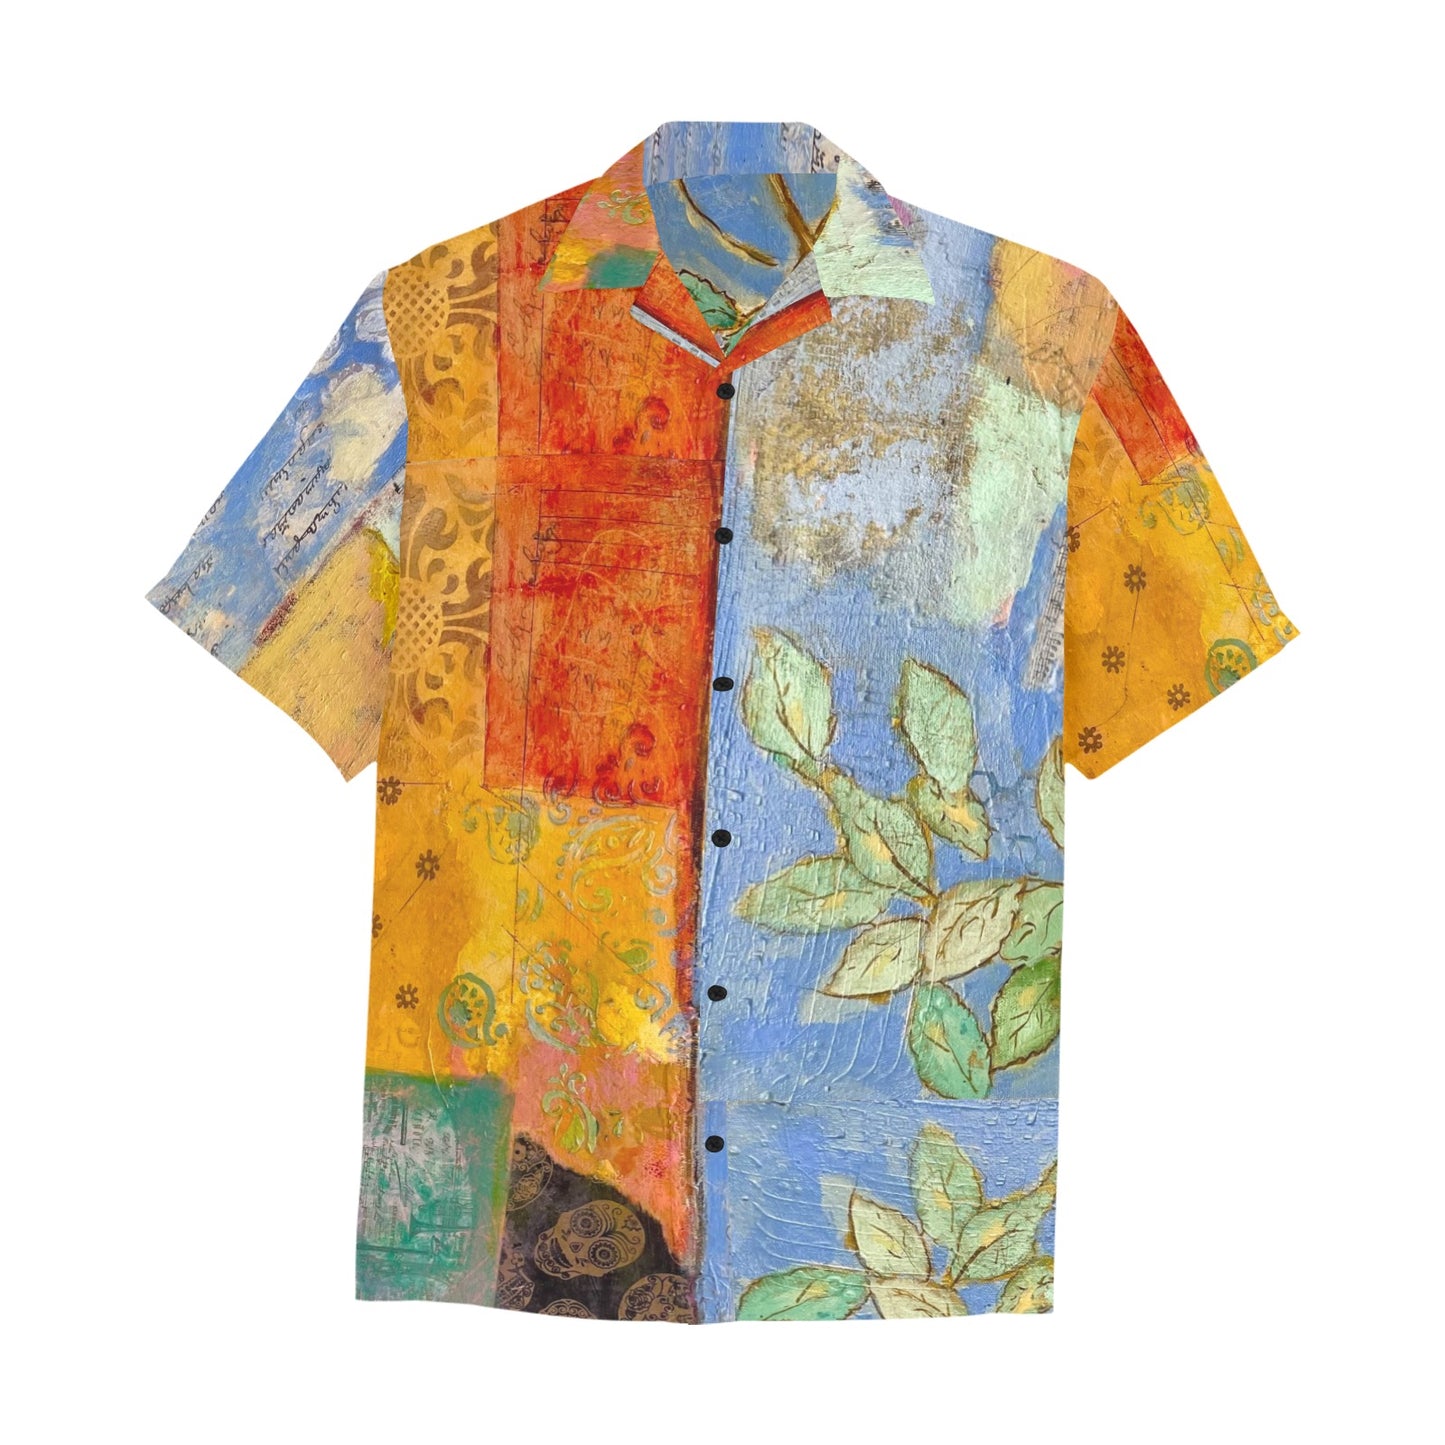 Tropical Paradise Custom Art Hawaiian Shirt - Soft Fabric, Relaxed Fit